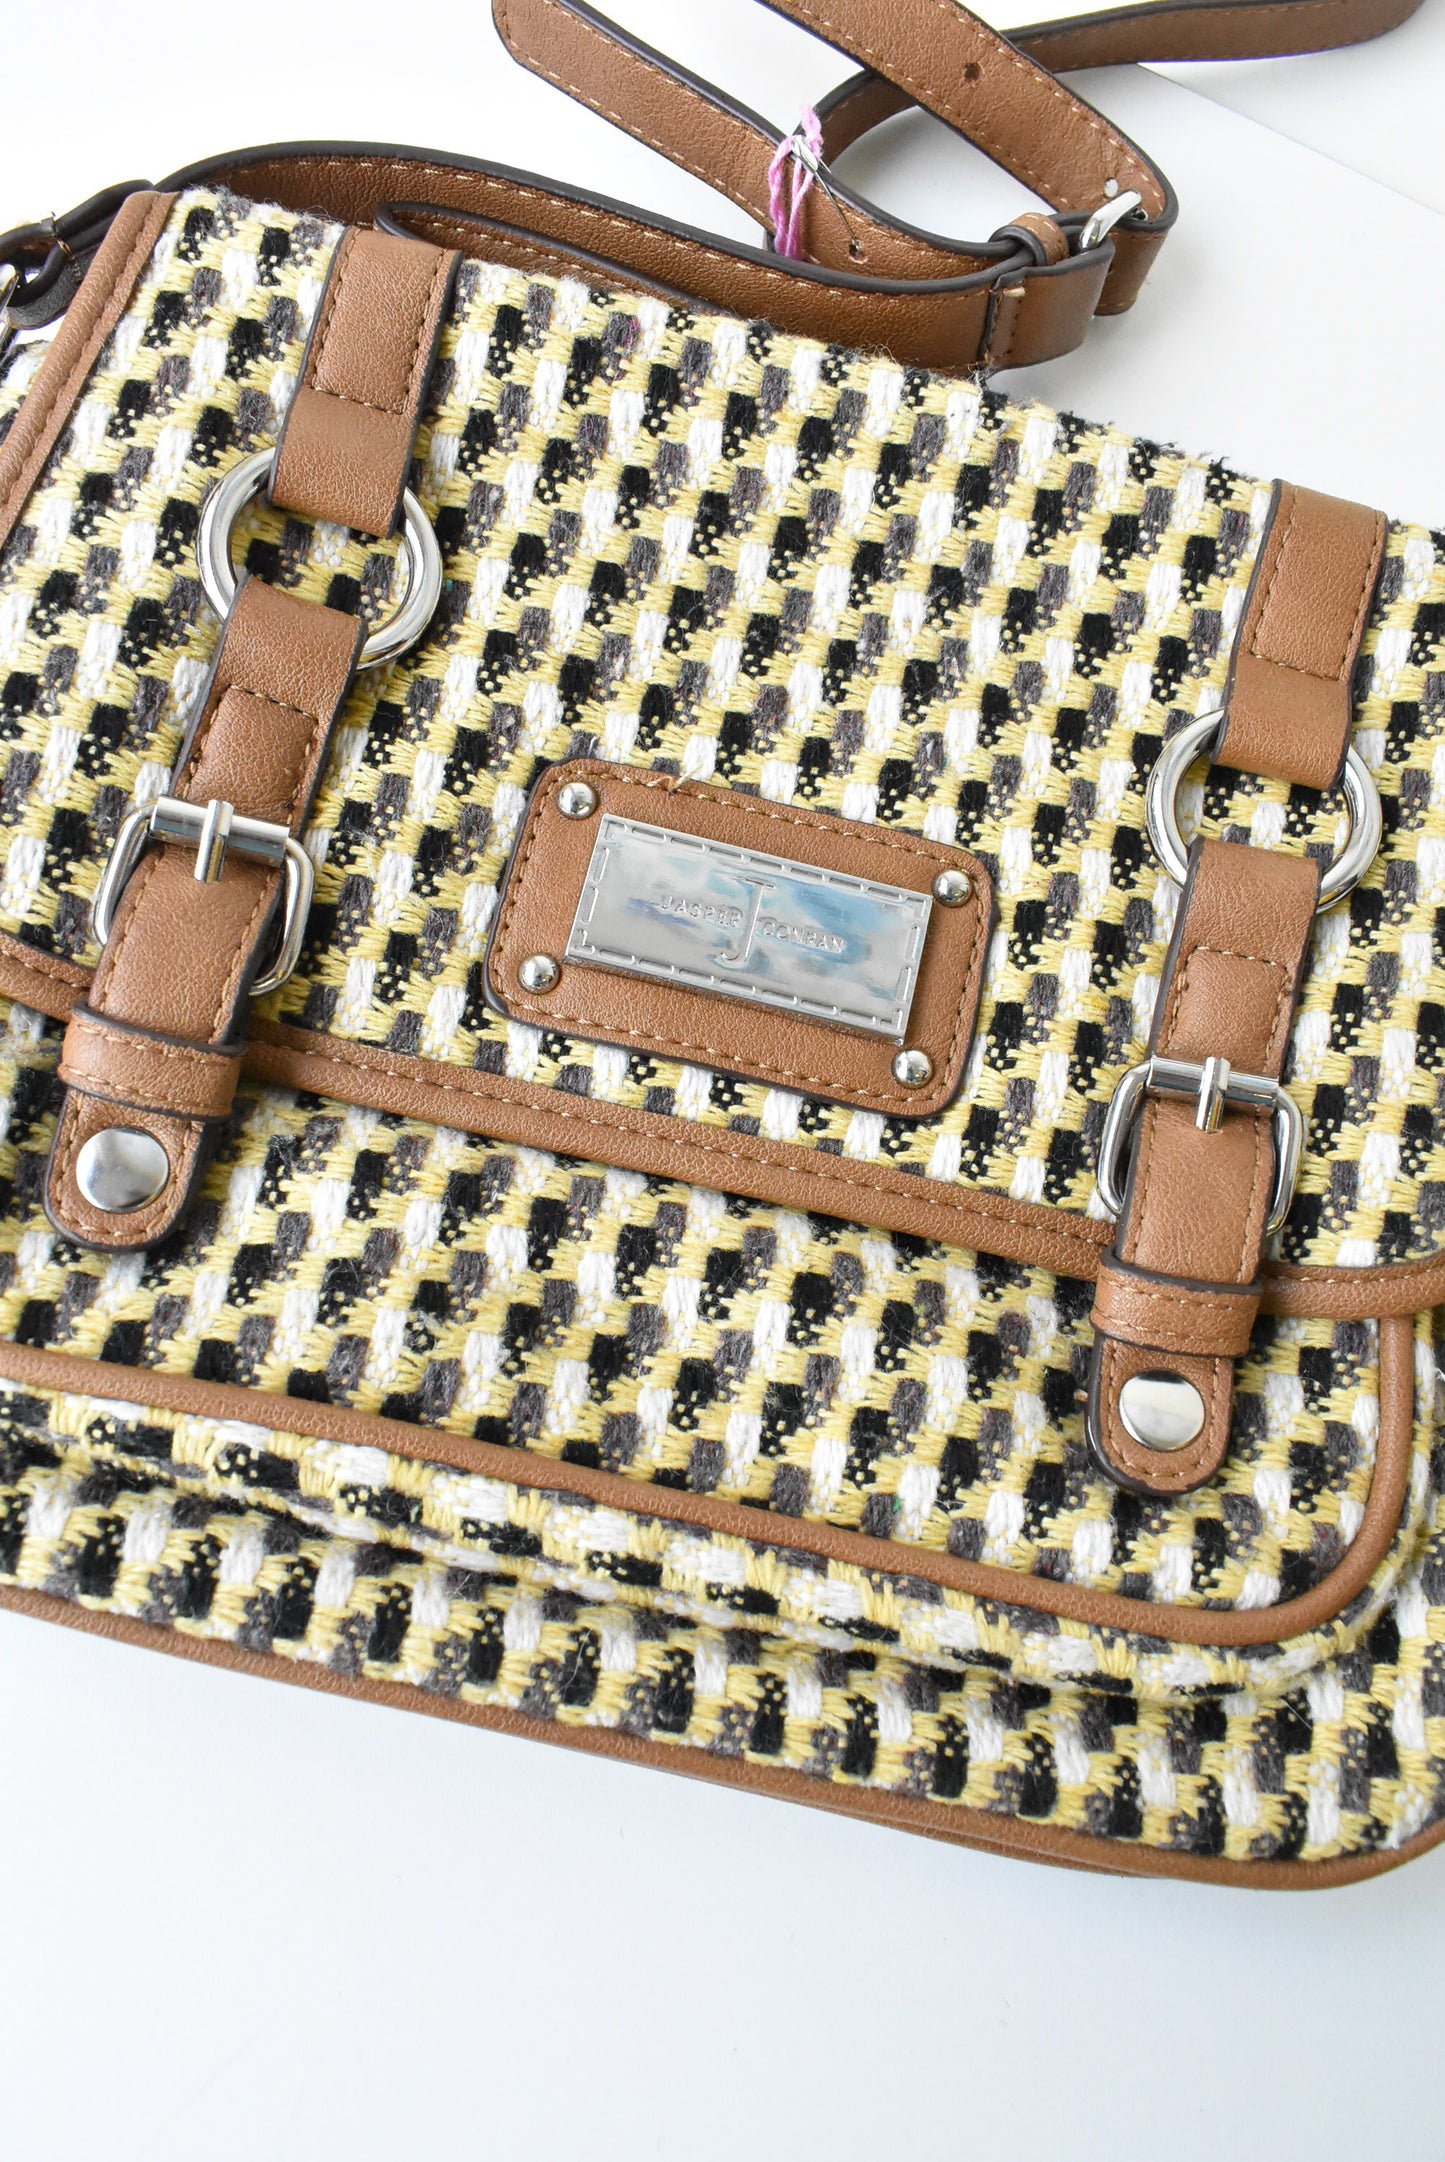 Jasper Conran woven-outer handbag